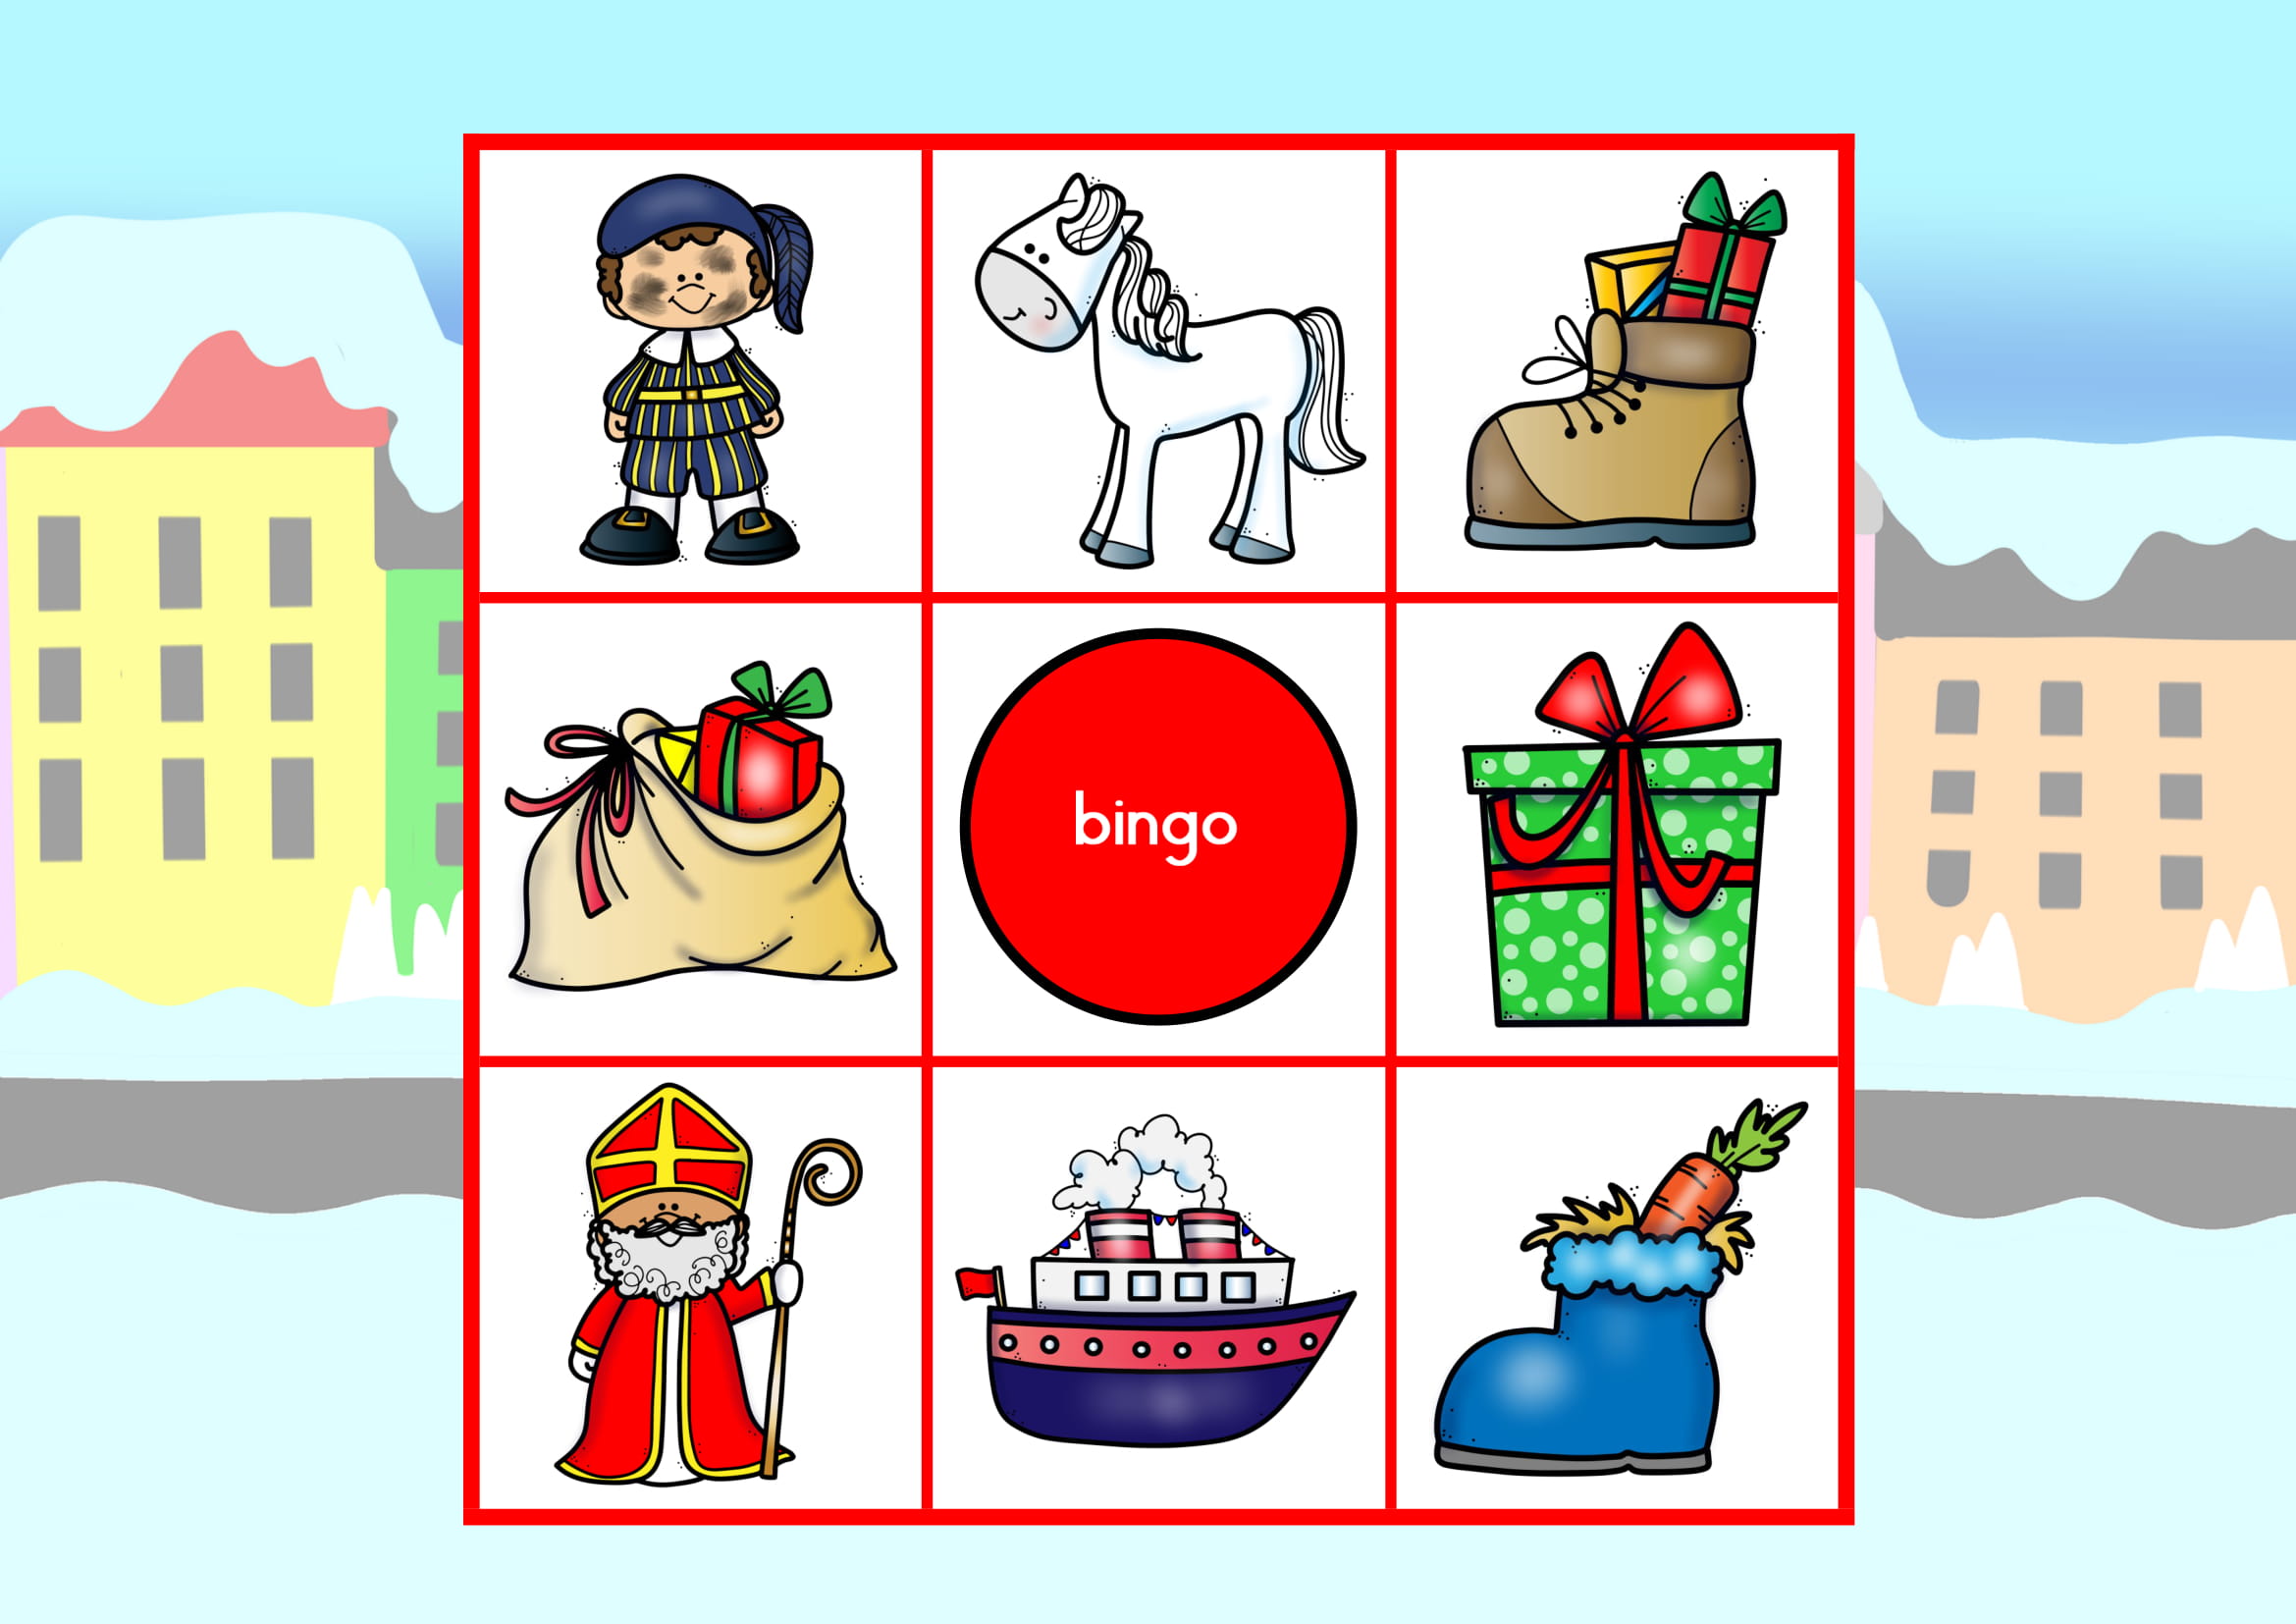 Bingo Ikea rad Sinterklaas; juf